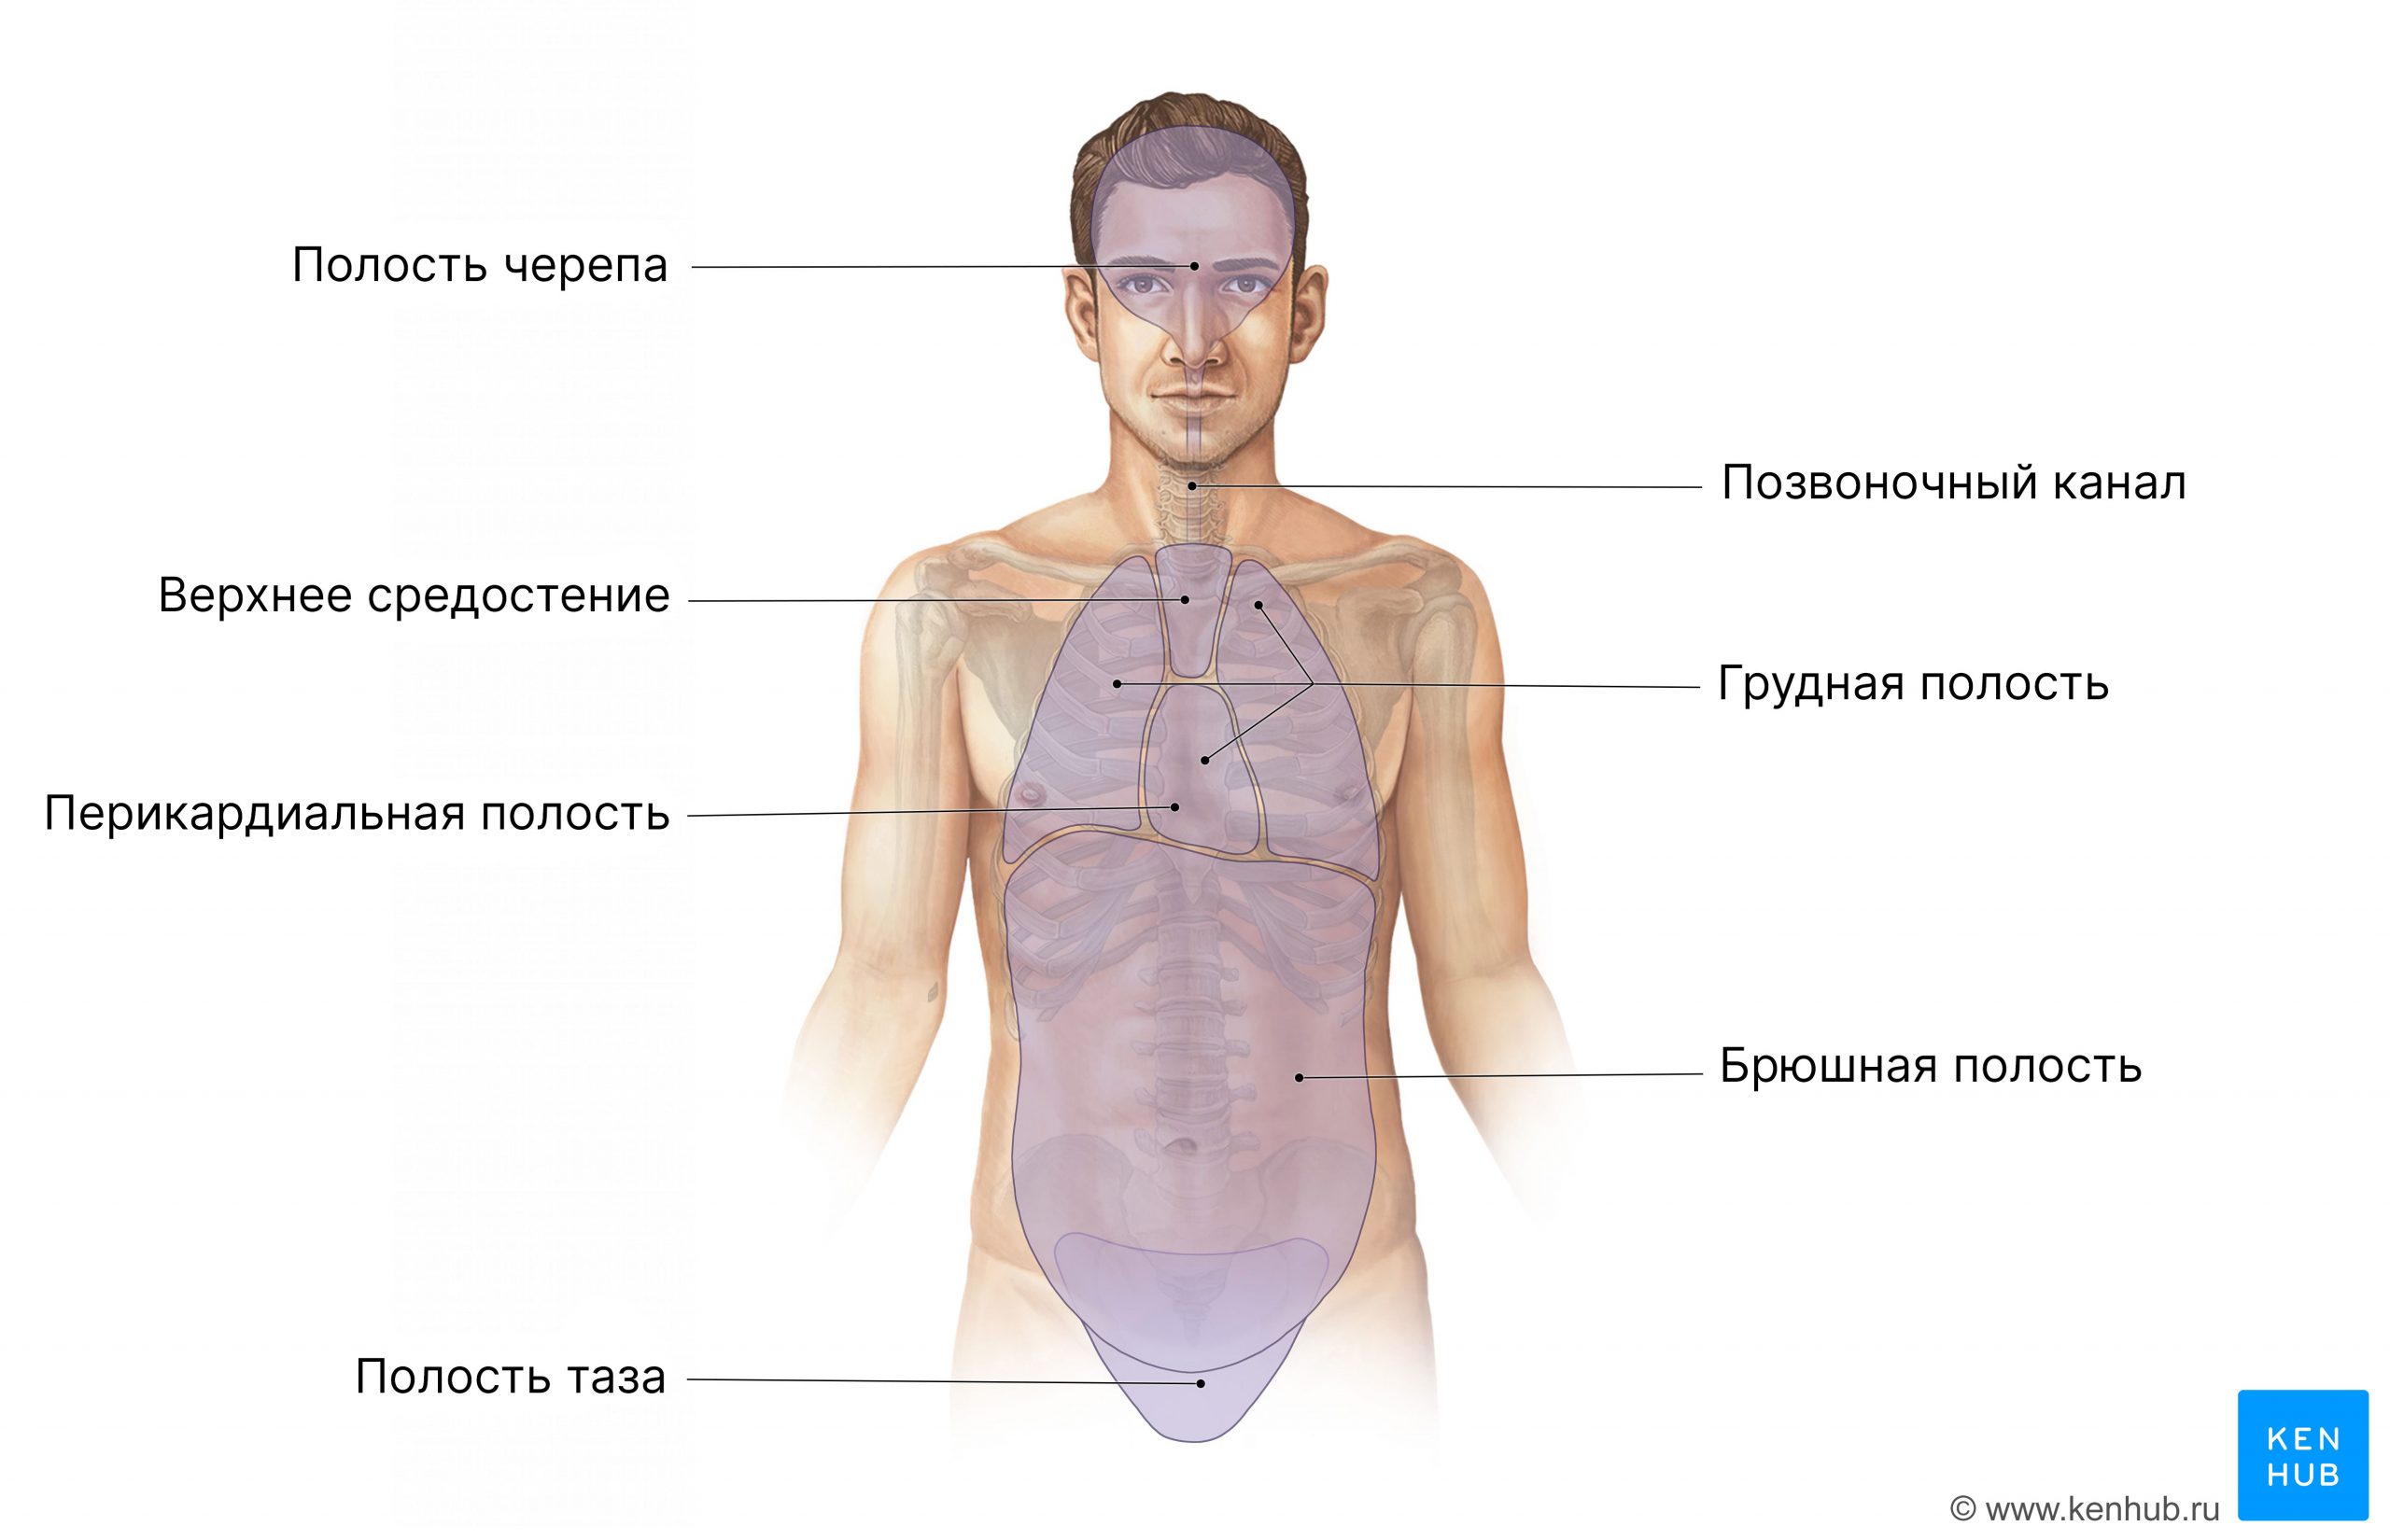 Полости человеческого тела (вид спереди)